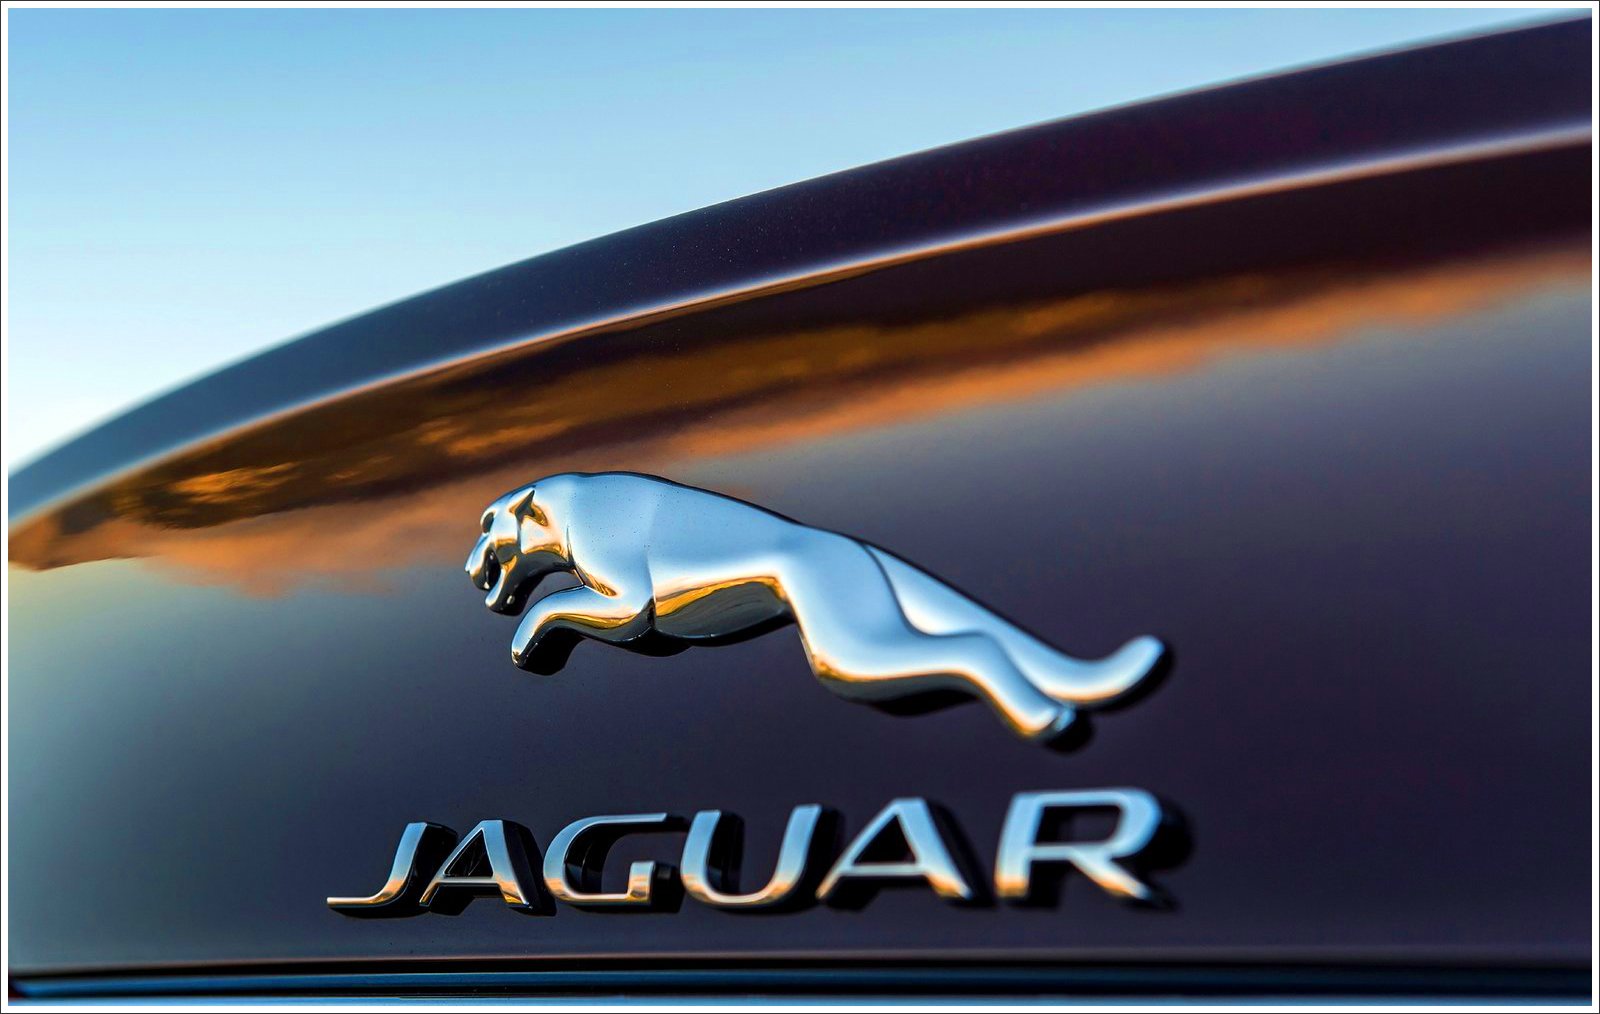 Jaguar Logo Meaning and History [Jaguar symbol]